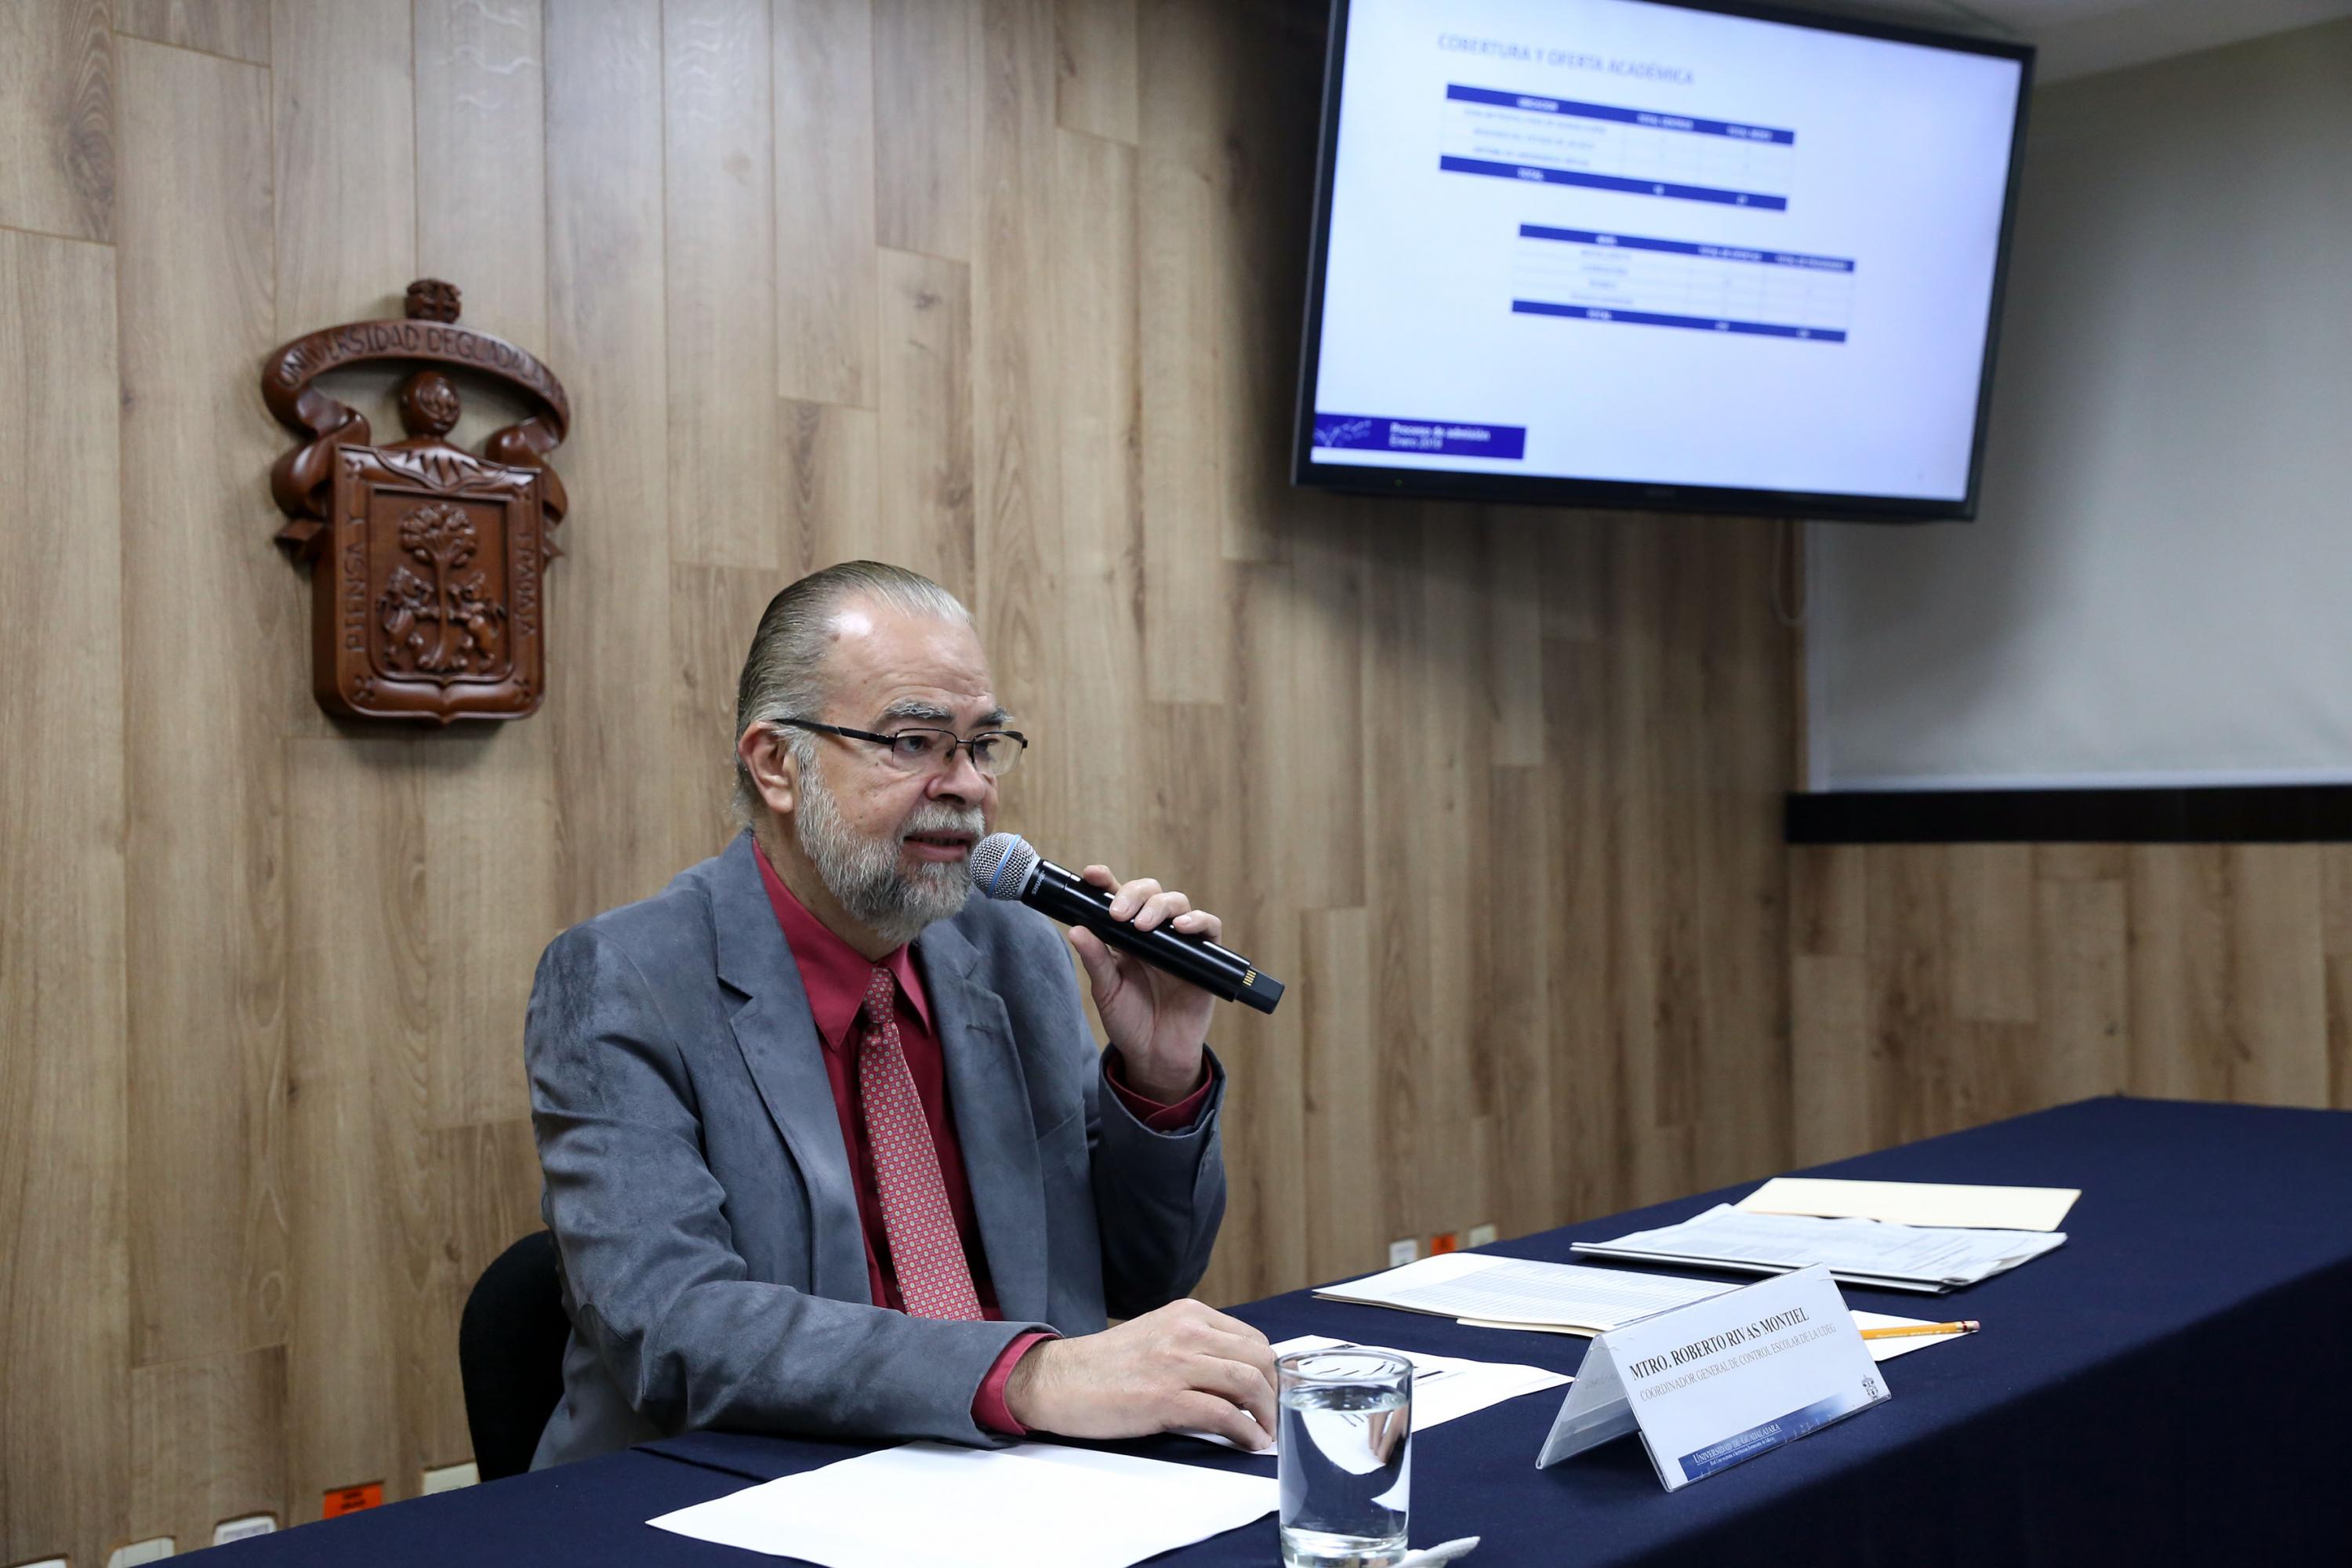 El maestro Roberto Rivas Montiel exponiendo ante los medios las estadisticas de ingreso del calendario 2019 A